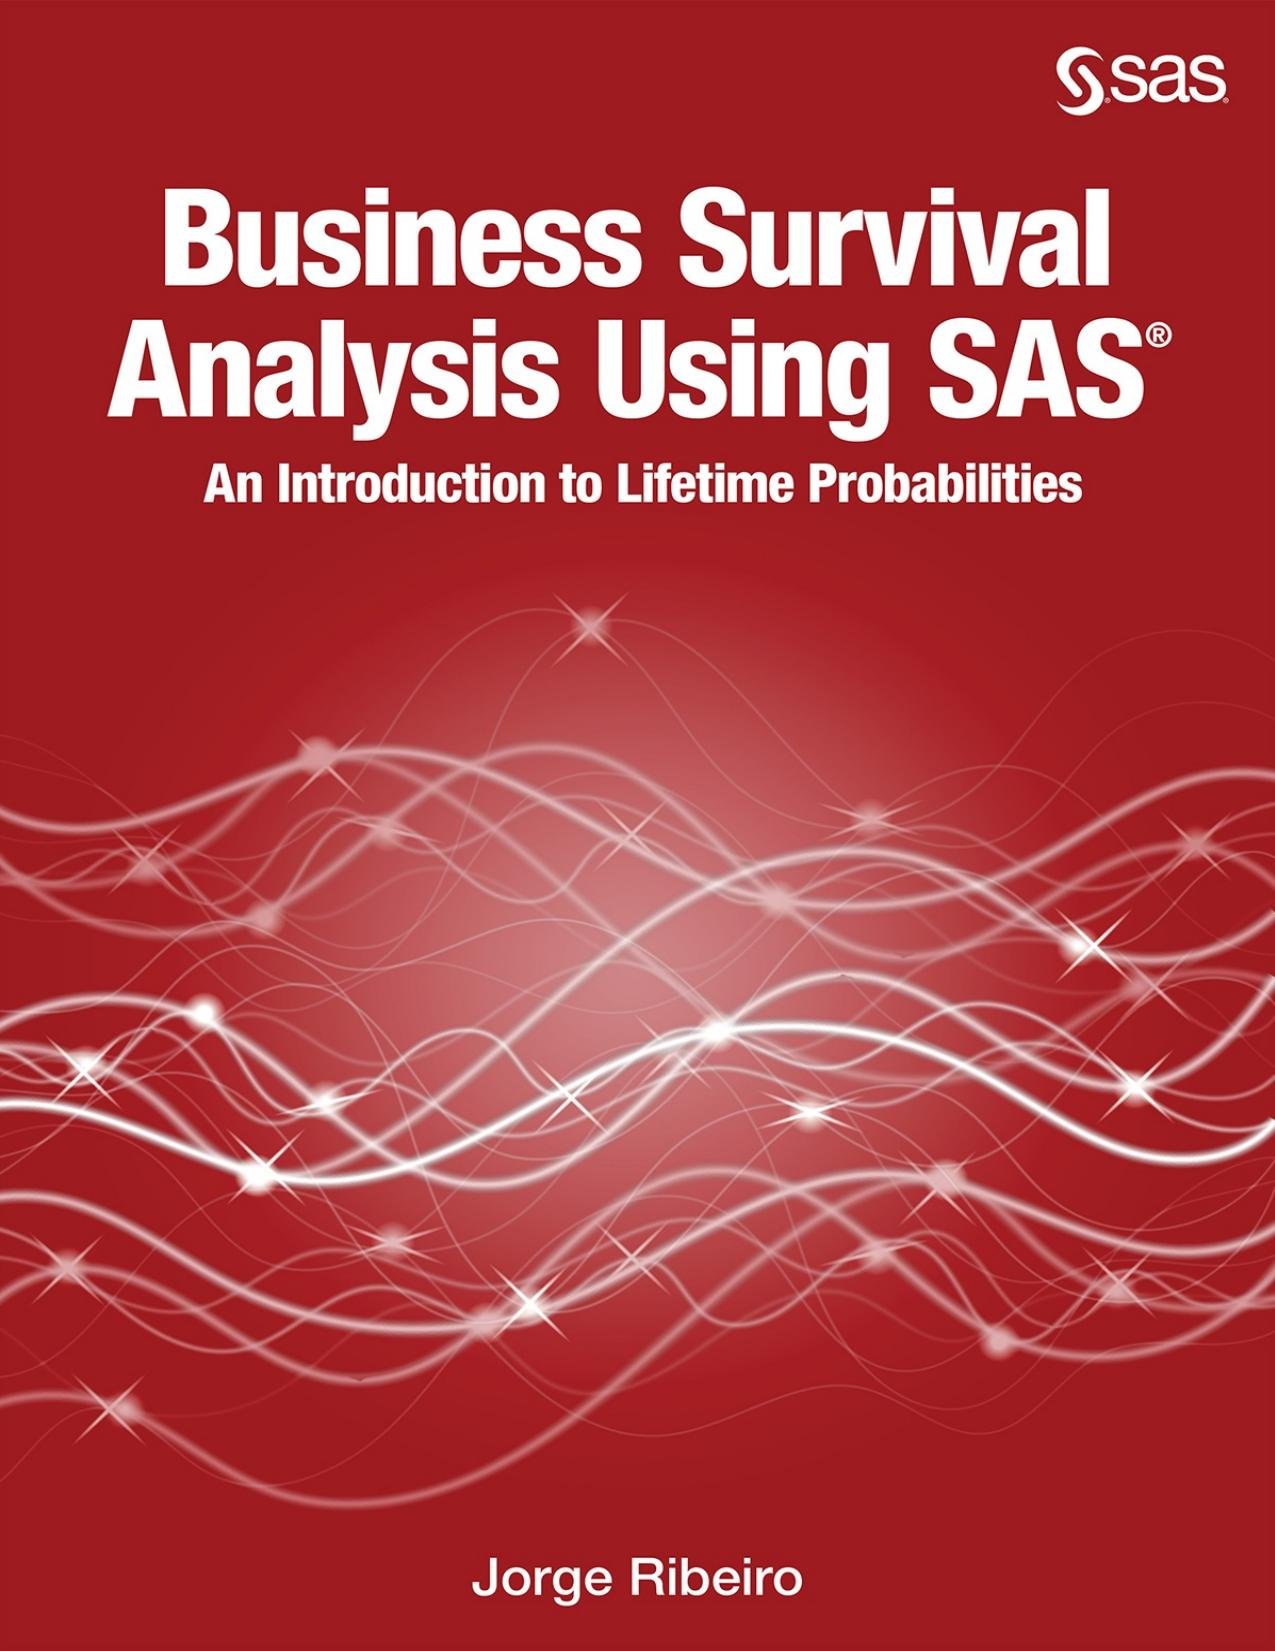 Business Survival Analysis Using SAS by Jorge Ribeiro